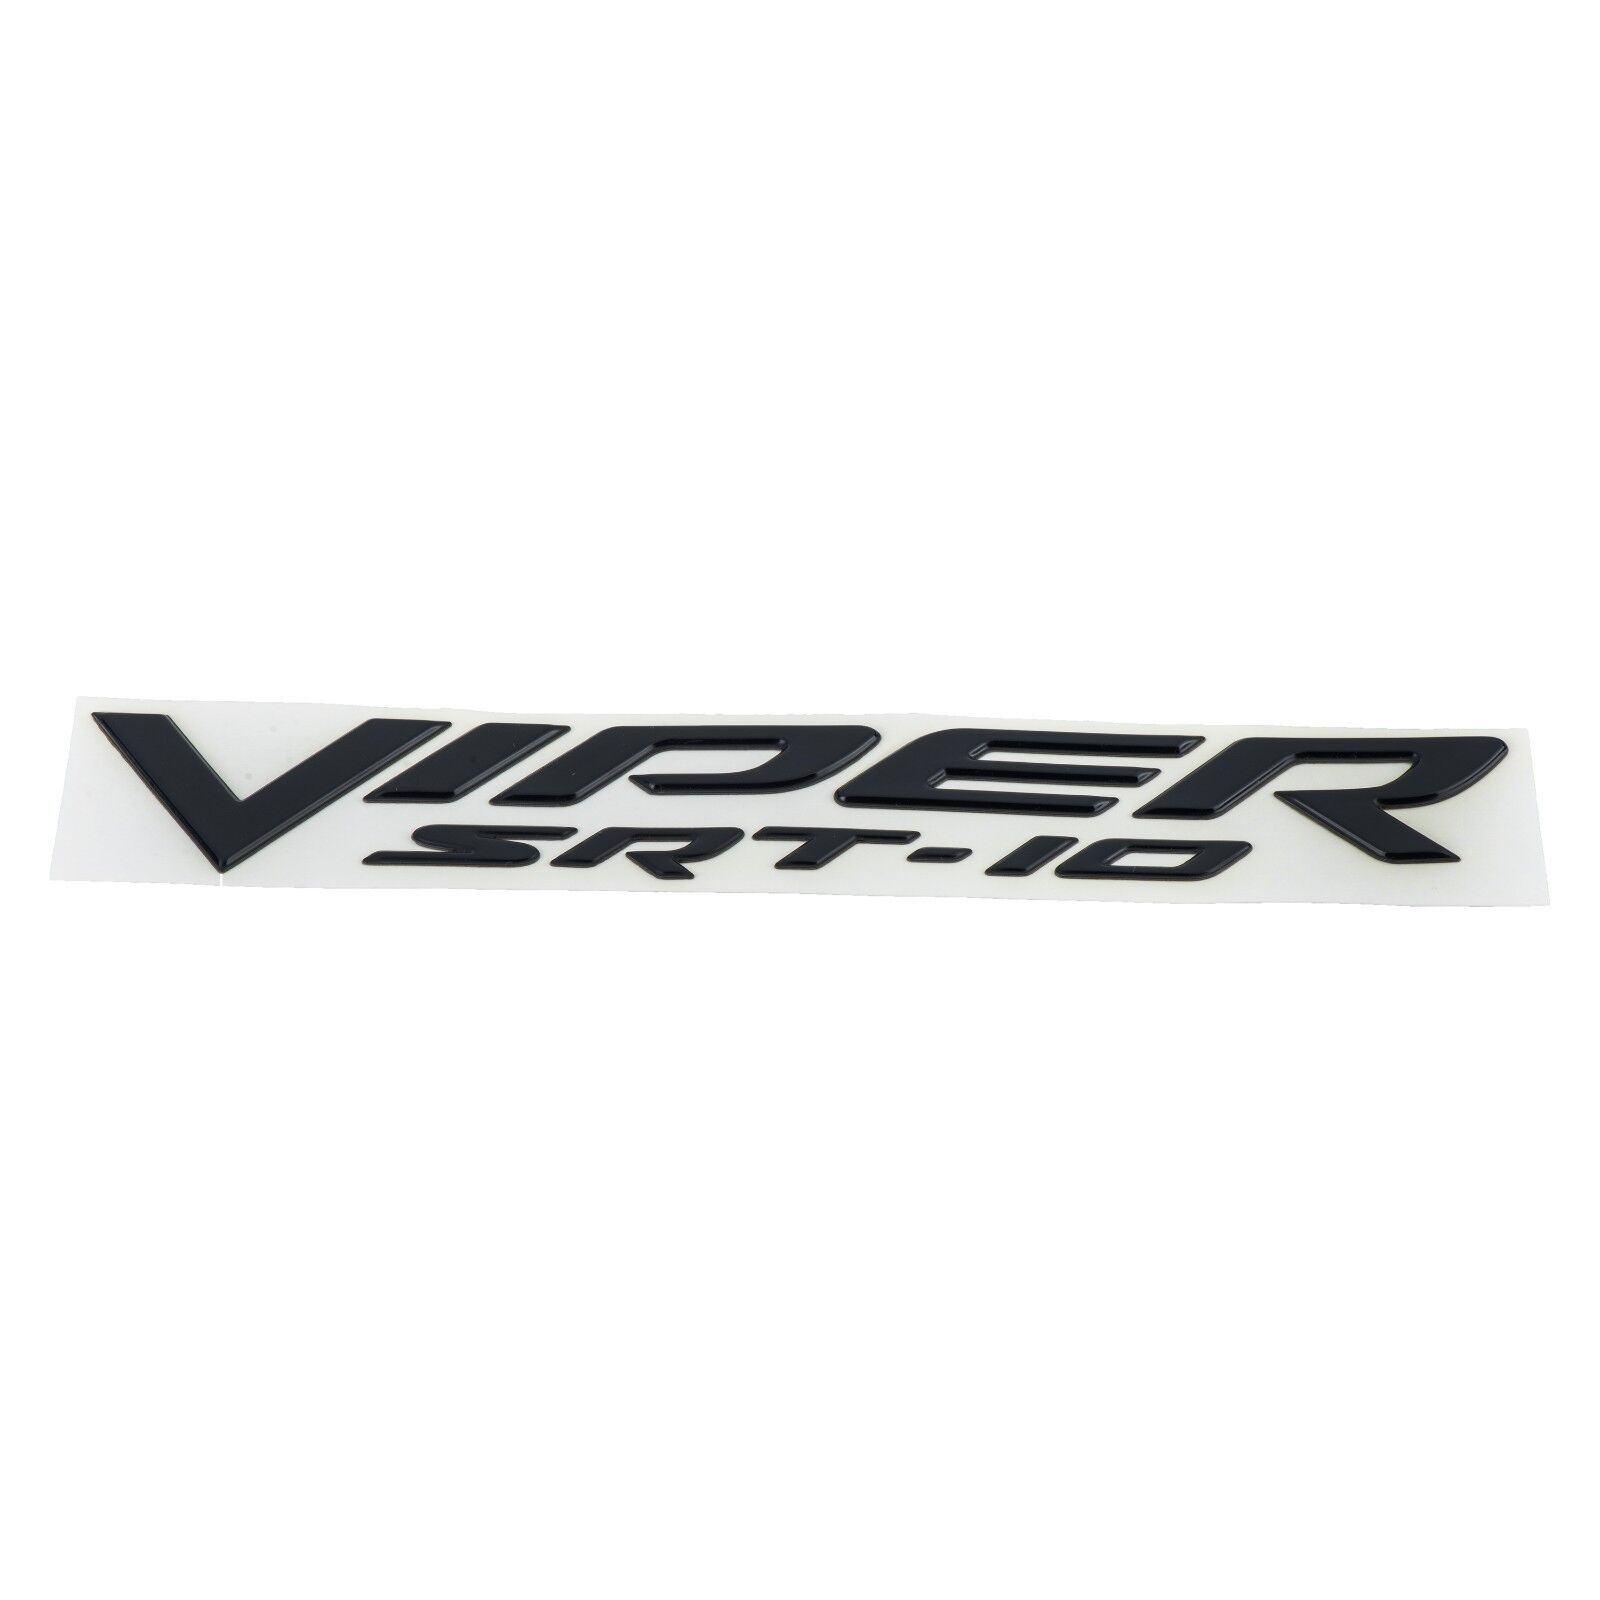 2003-2005 DODGE VIPER SRT-10 BLACK FENDER EMBLEM NAMEPLATE BADGE OEM NEW MOPAR